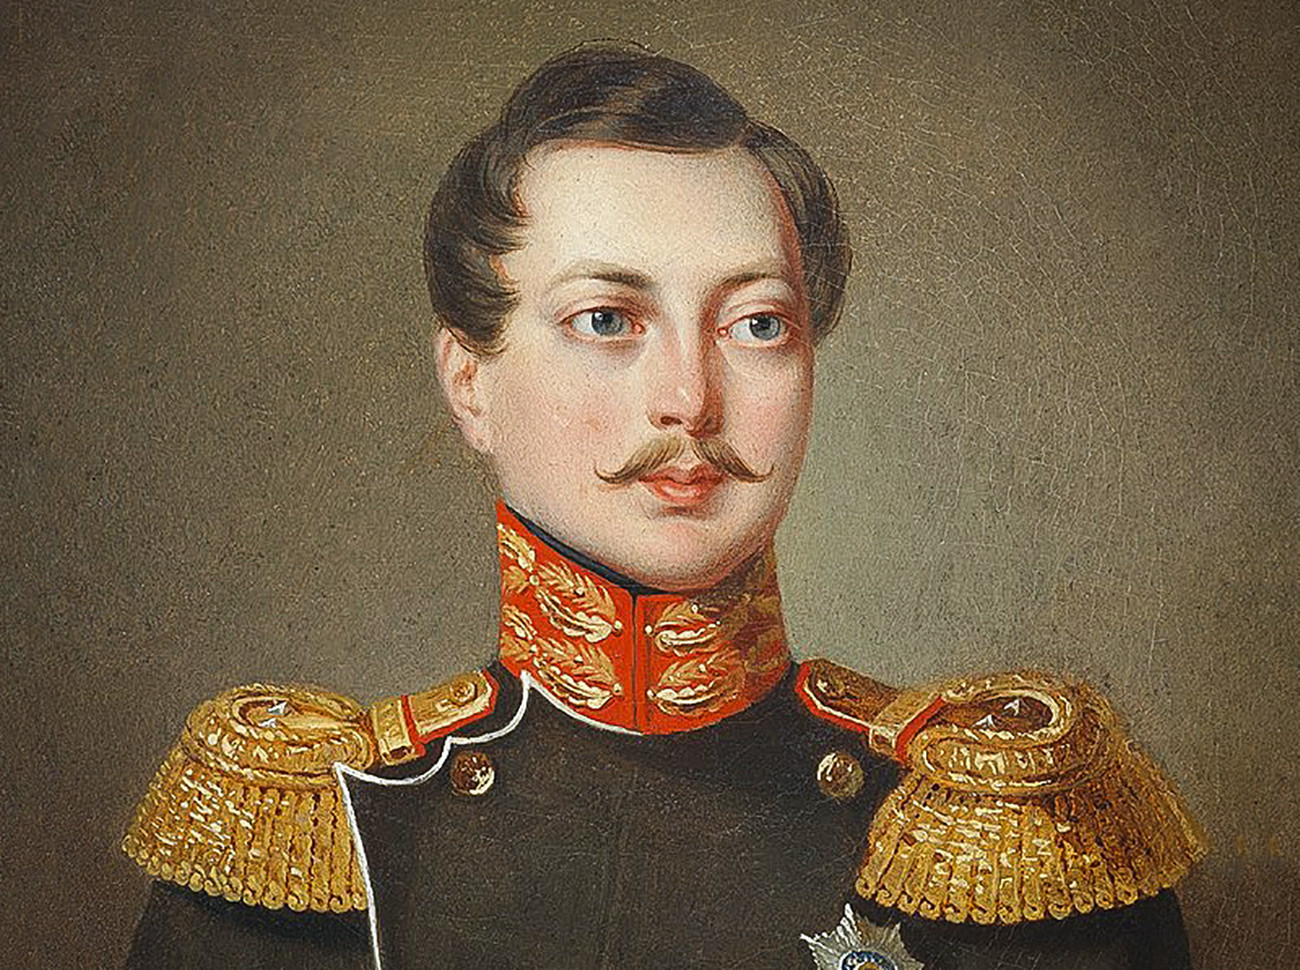 Alexander II muda, saat itu — tsarevich dan pewaris tahta Rusia.